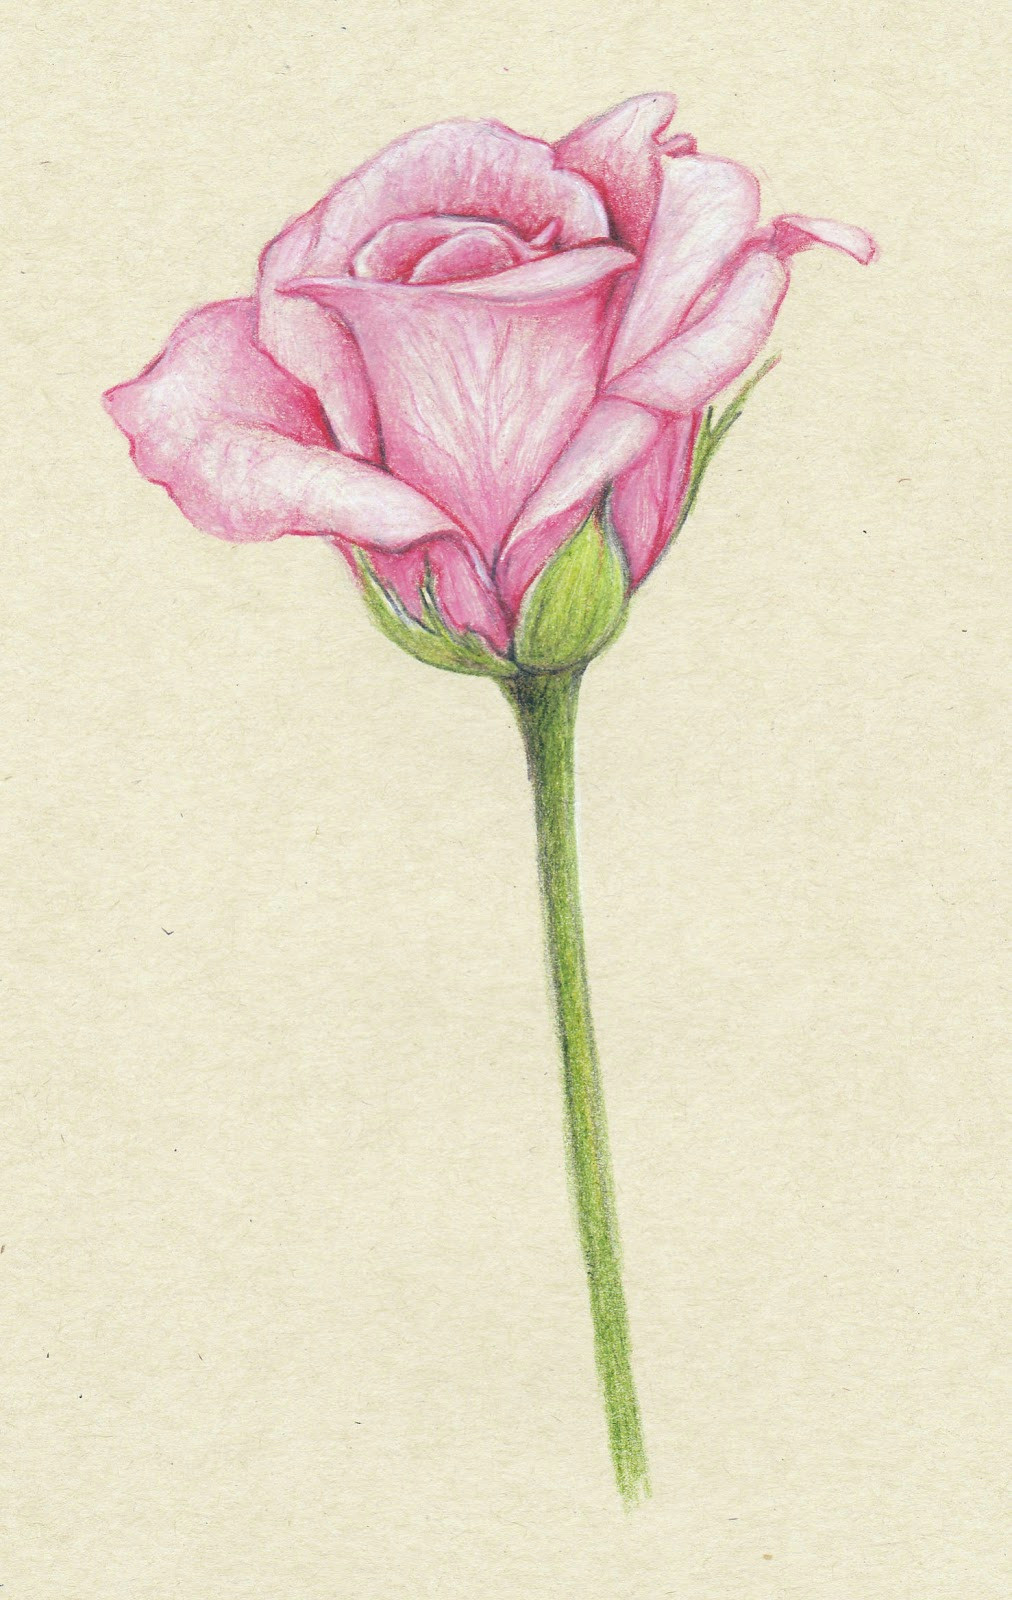 Beautiful Drawings Of Flower Pots 61 Best Art Pencil Drawings Of Flowers Images Pencil Drawings